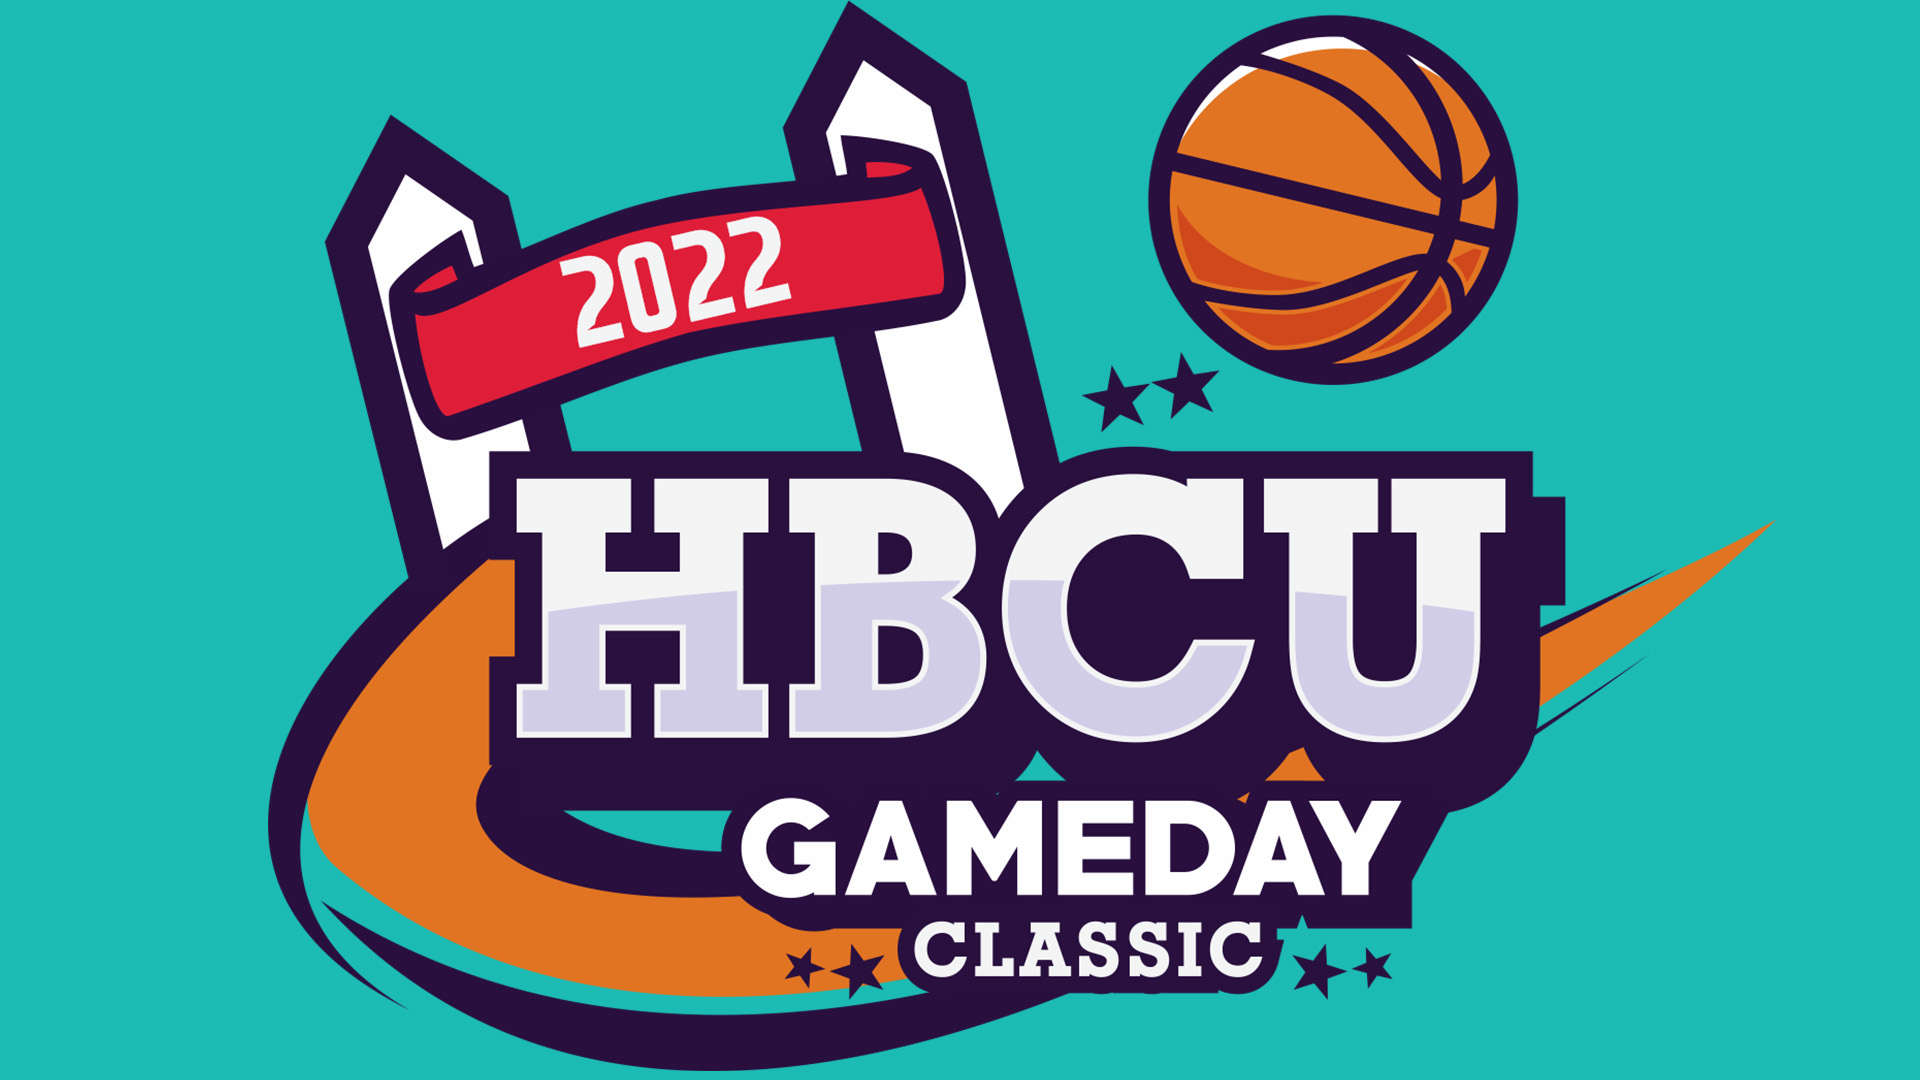 HBCU Gameday Classic